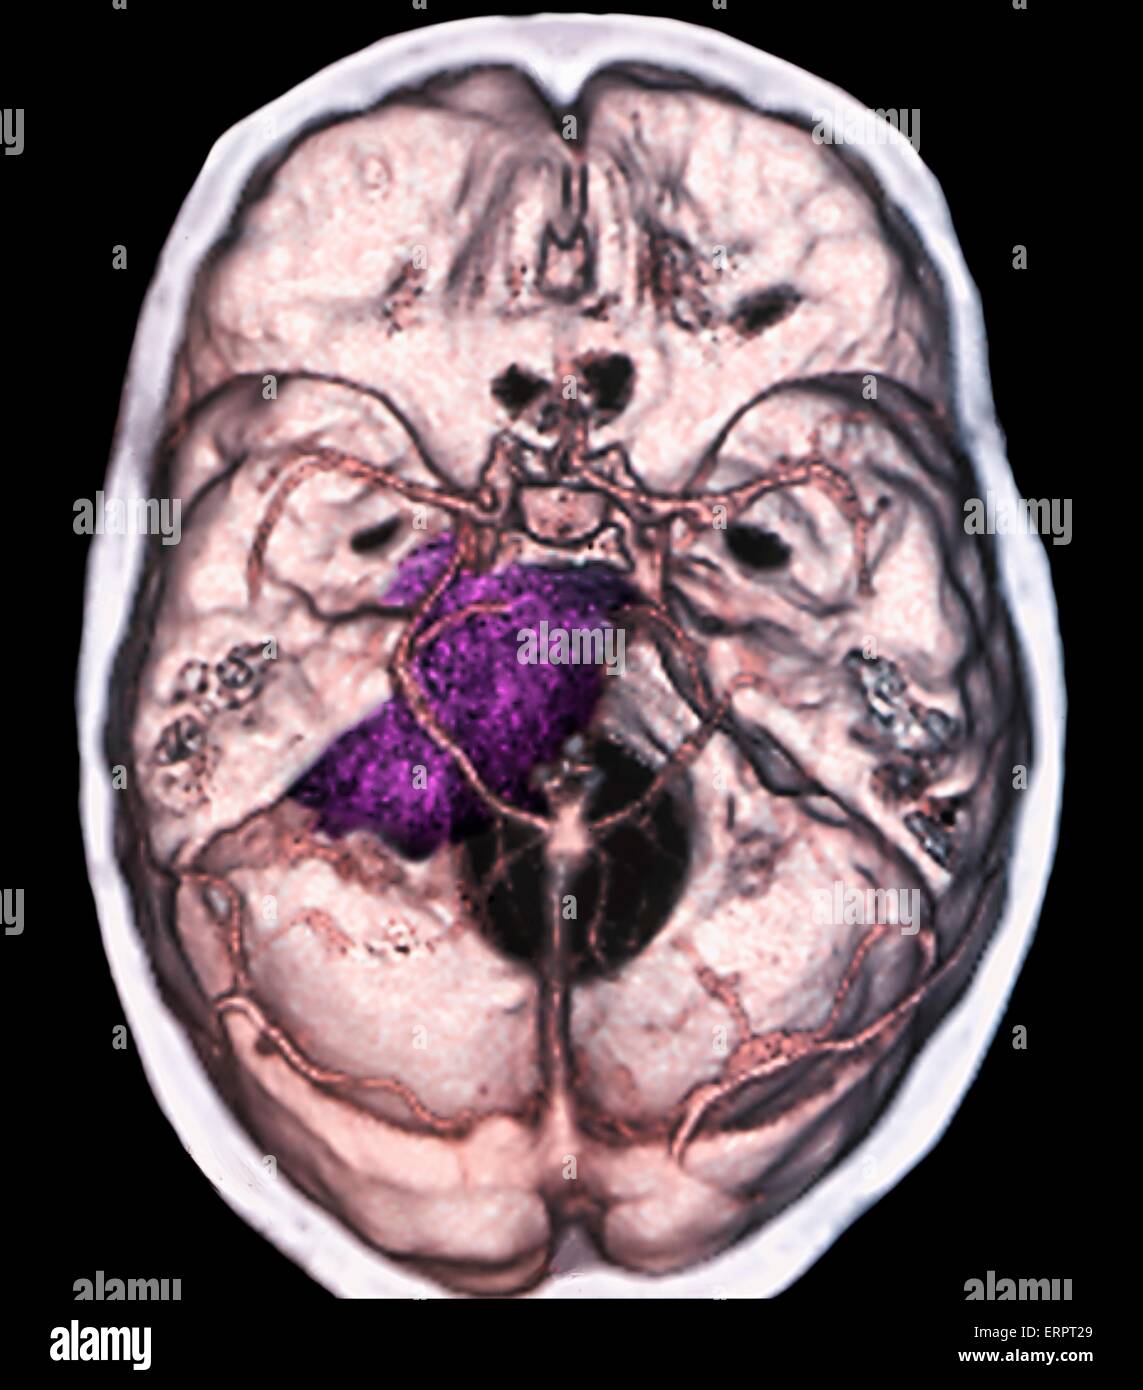 Benigna tumore al cervello. Colorato la tomografia computerizzata (CT) scansione del cervello di un 48 anno di età di un paziente con un meningioma (viola). Si tratta di un benigno (non cancerosi) il tumore che nasce dalla meningi, le membrane che circondano il cervello. Foto Stock